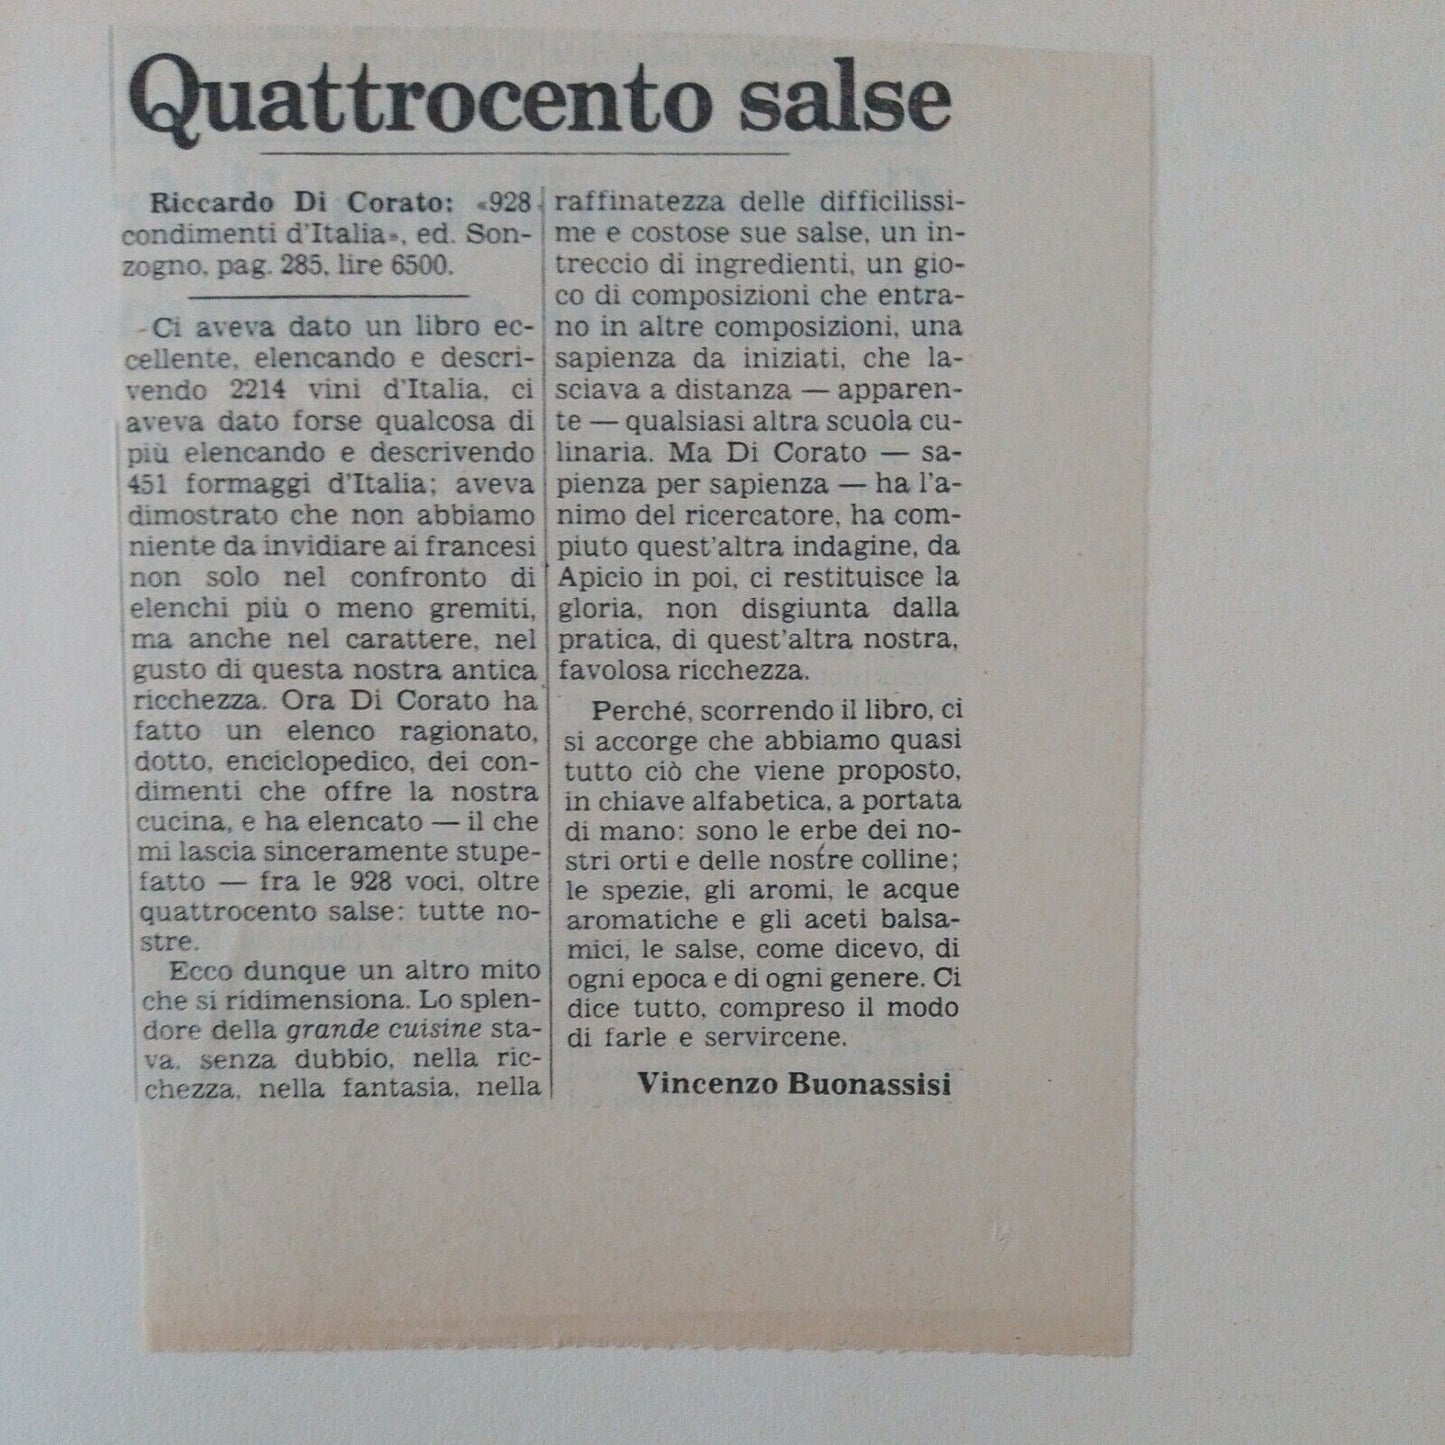 928 CONDIMENTI D’ITALIA,Riccardo  Di Corato, SONZOGNO 1978